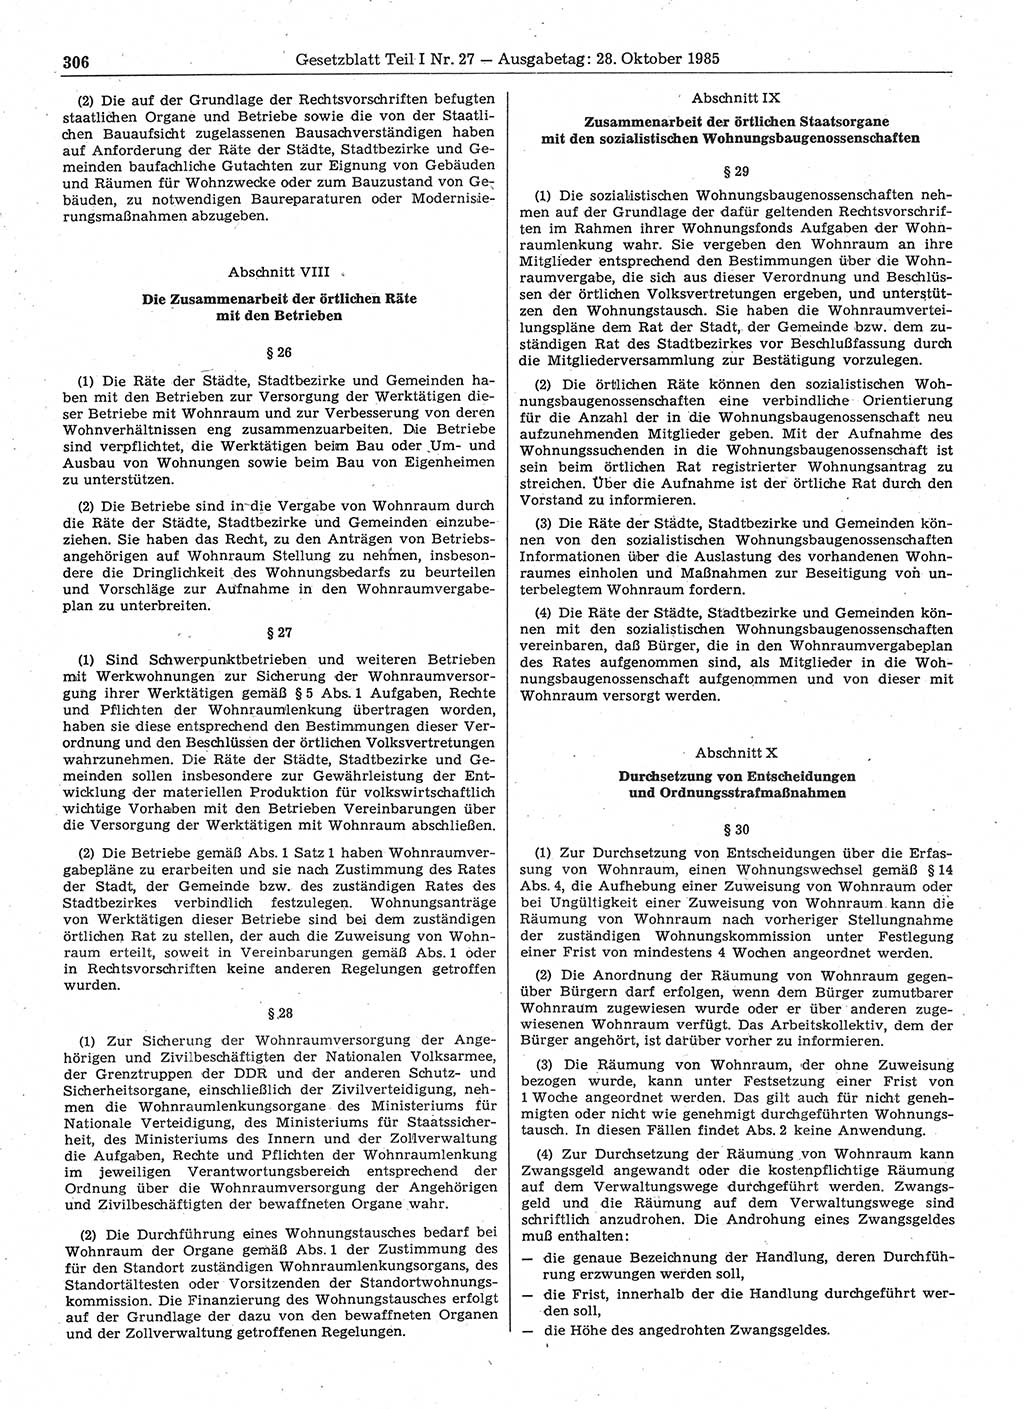 Gesetzblatt (GBl.) der Deutschen Demokratischen Republik (DDR) Teil Ⅰ 1985, Seite 306 (GBl. DDR Ⅰ 1985, S. 306)